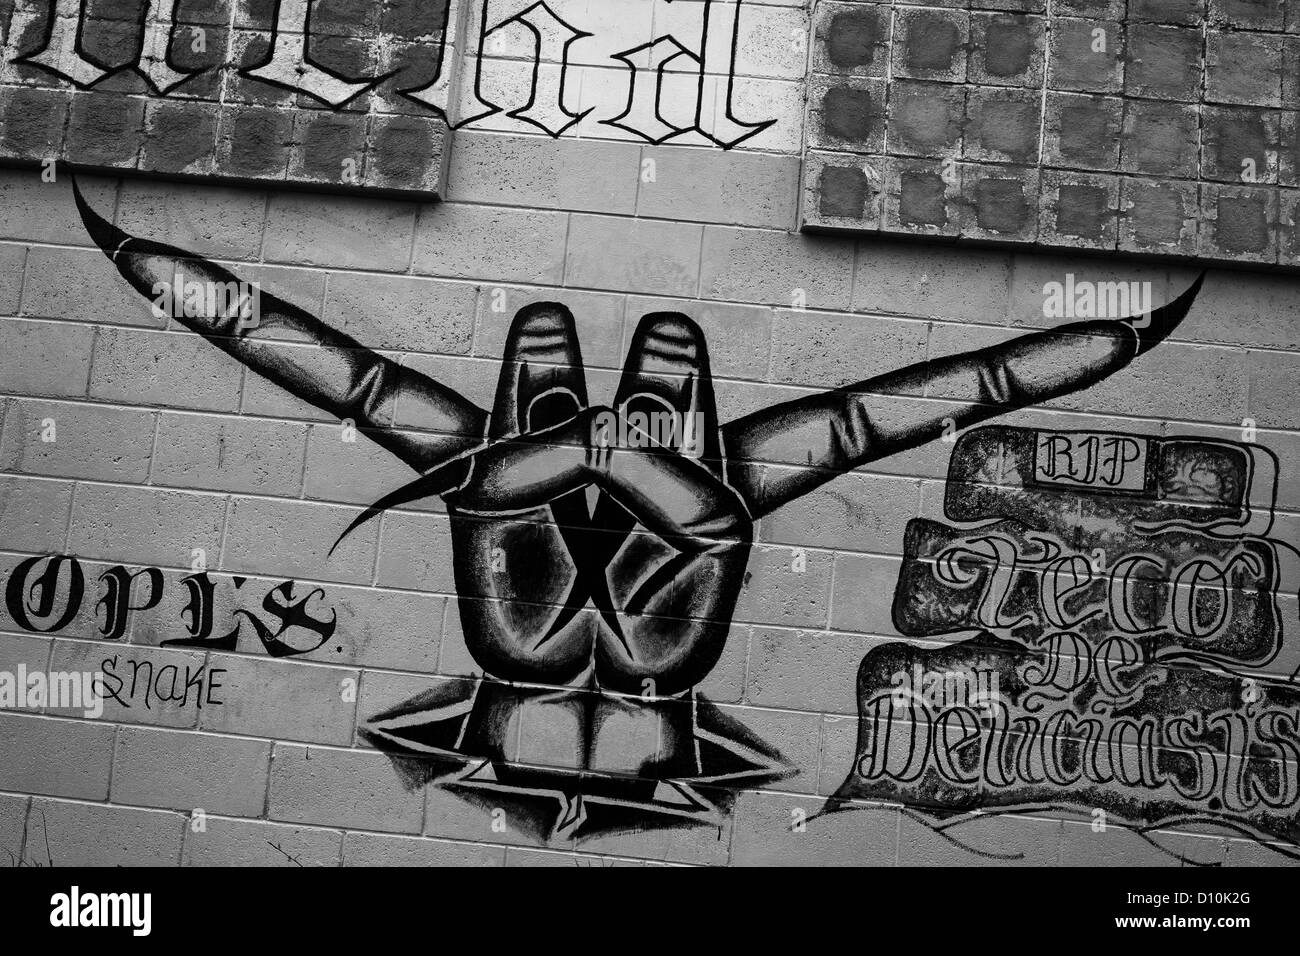 Una mara mara salvatrucha graffiti ("cuernos del diablo"), pintado en la pared de la prisión de Tonacatepeque, el salvador. Foto de stock